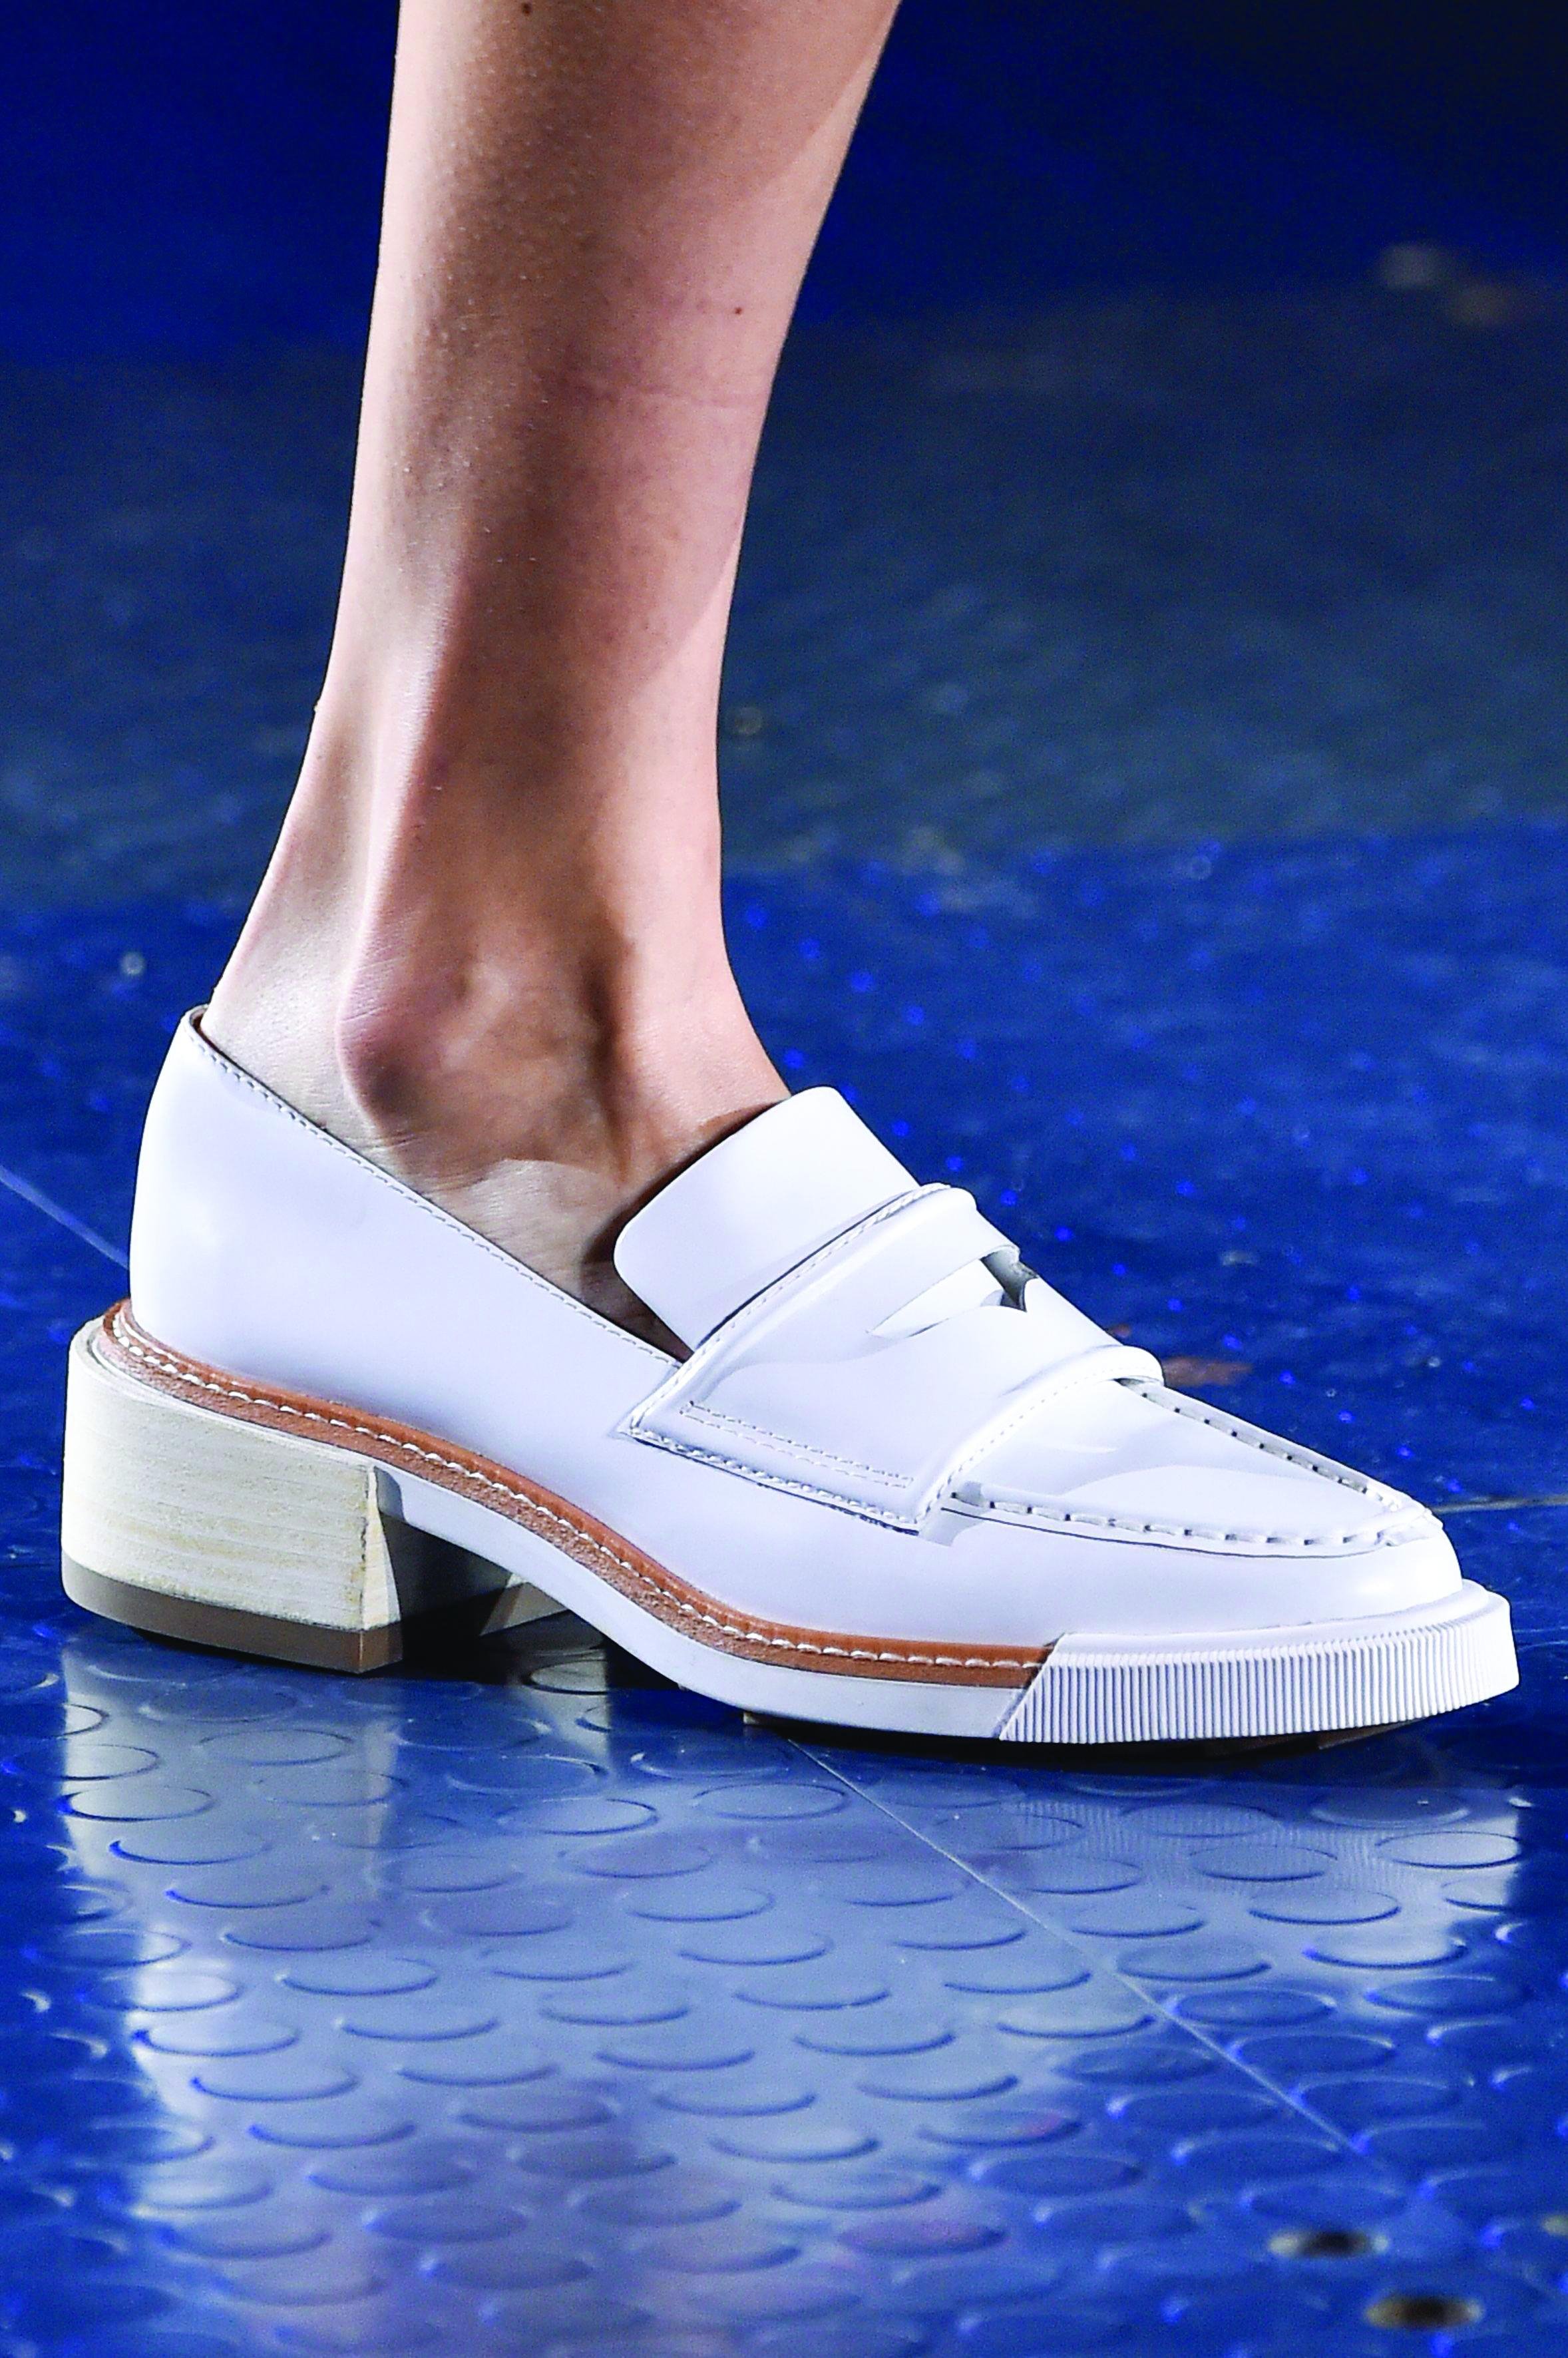 حذاء أكسسوار شوز أكسسوارات أحذية نسائية صيحات الربيع ربيع 2020